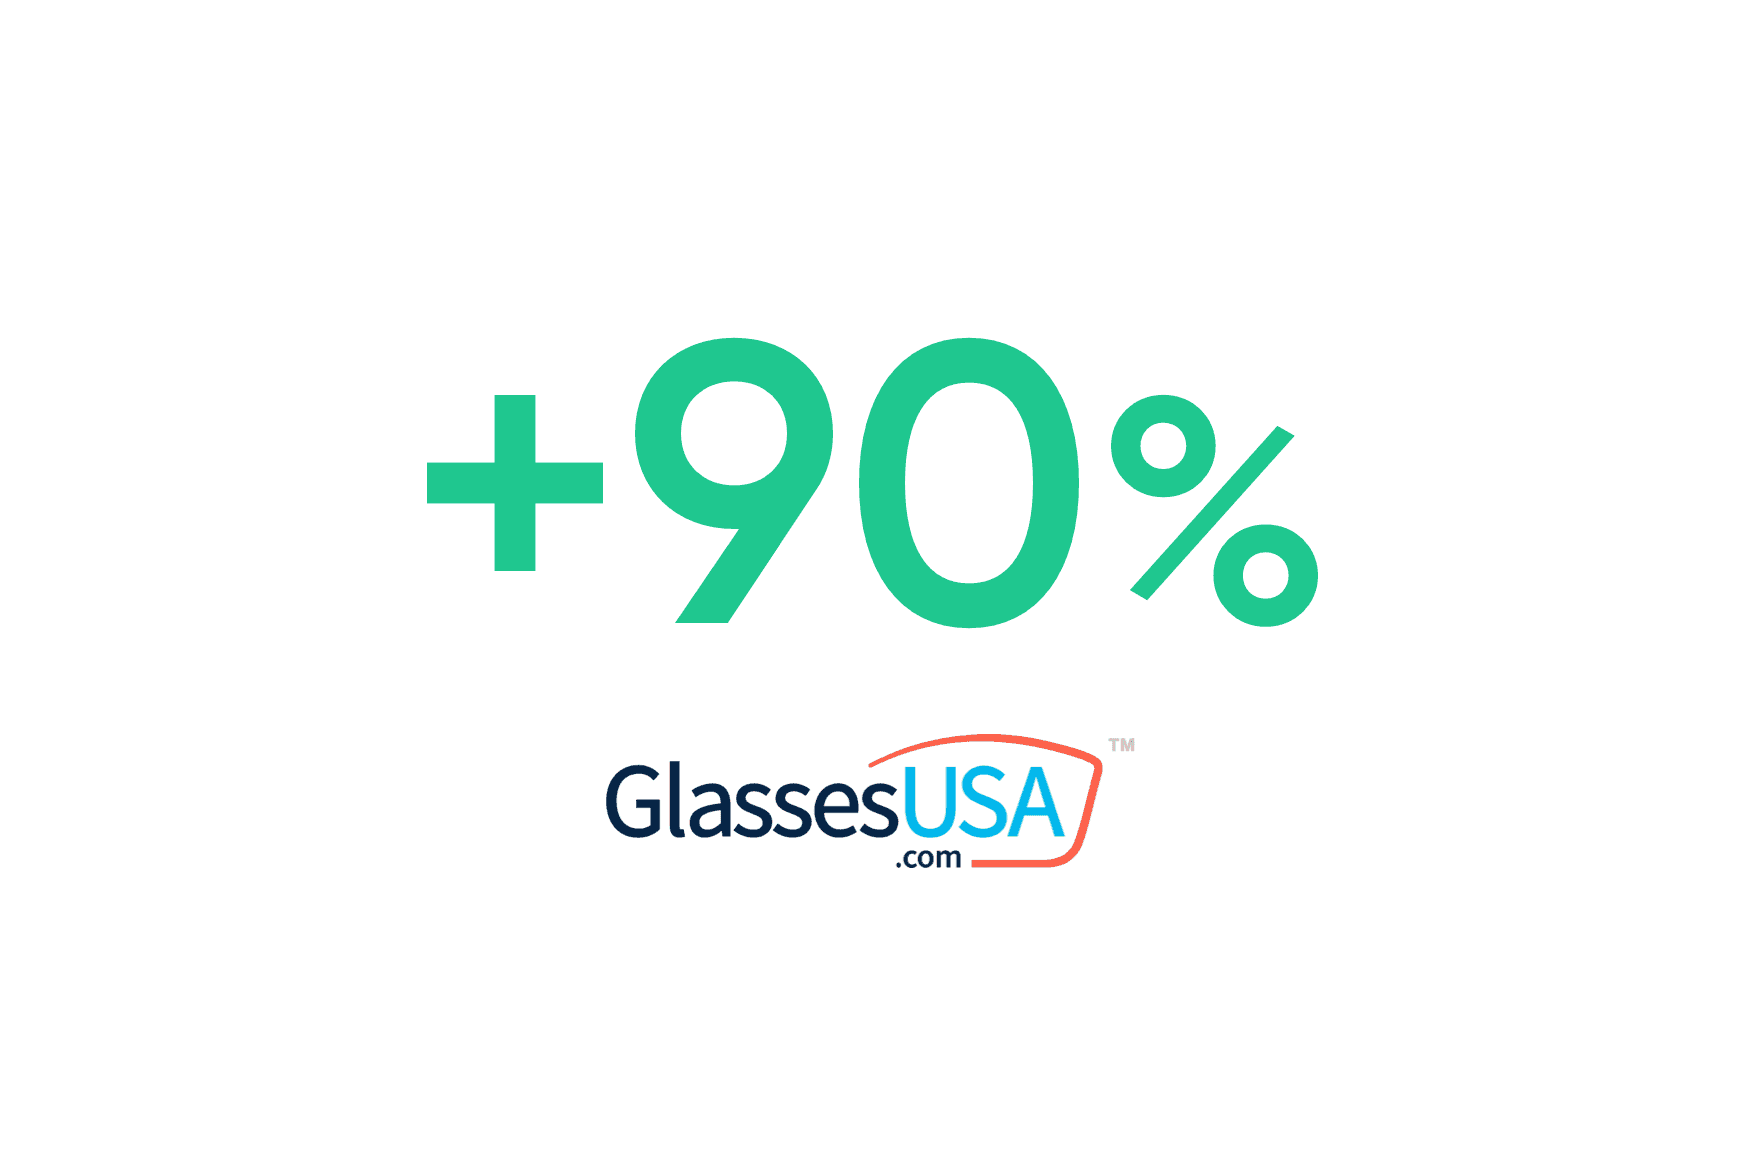 Glasses USA: Erhöhung der Abholquote auf 90